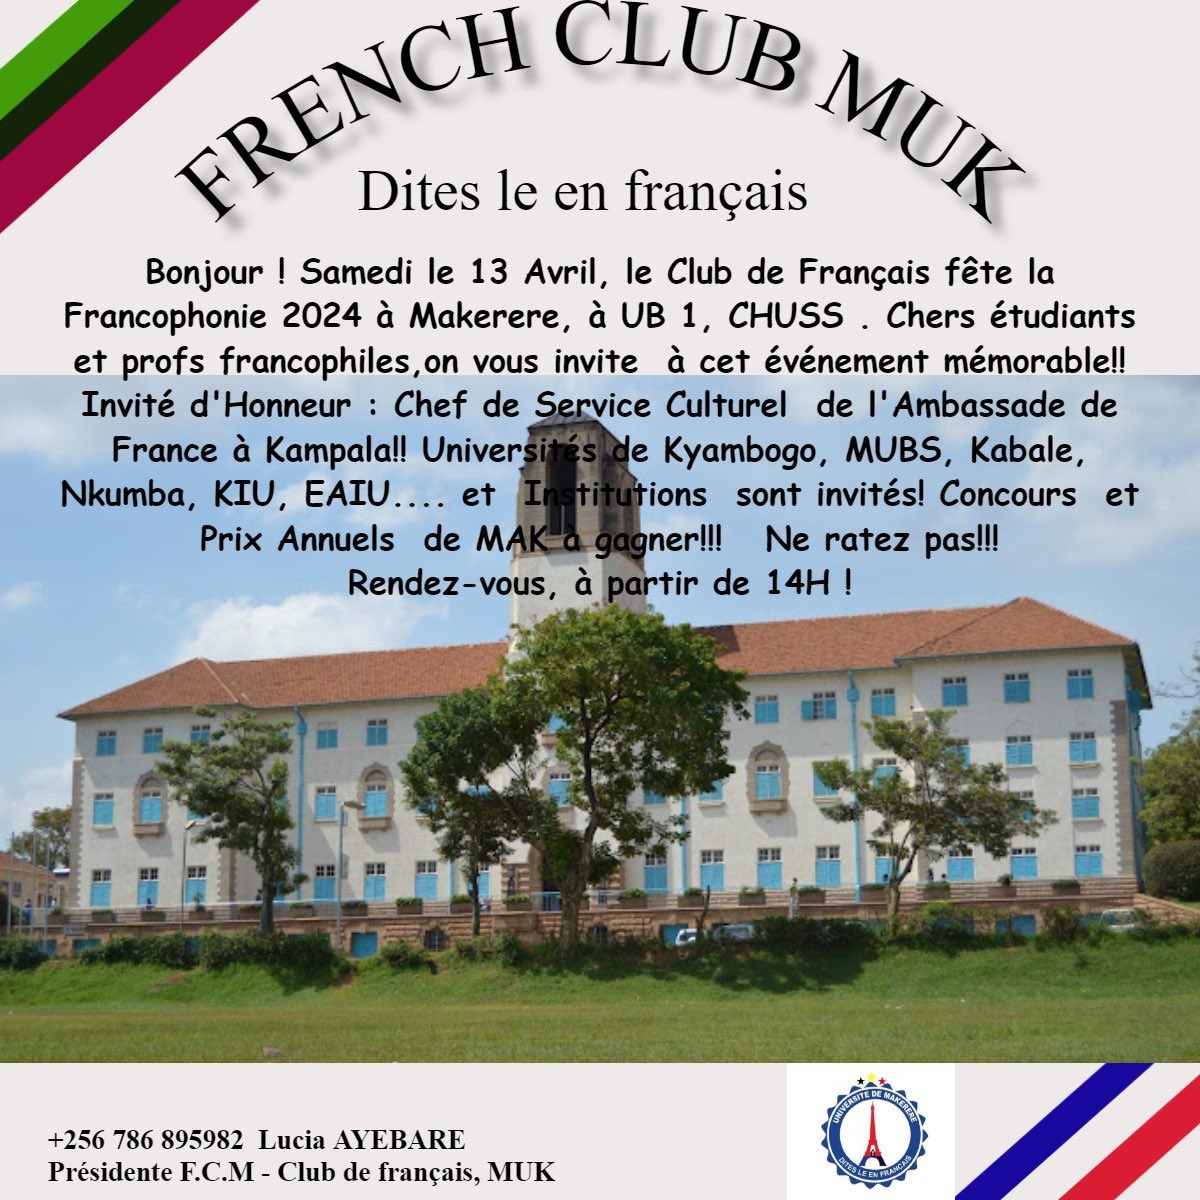 Ce samedi 13 avril 2024, rejoignez-nous pour célébrer la Francophonie à l'Université de Makerere à U.B 1 à CHUSS à 14h💃🏻.